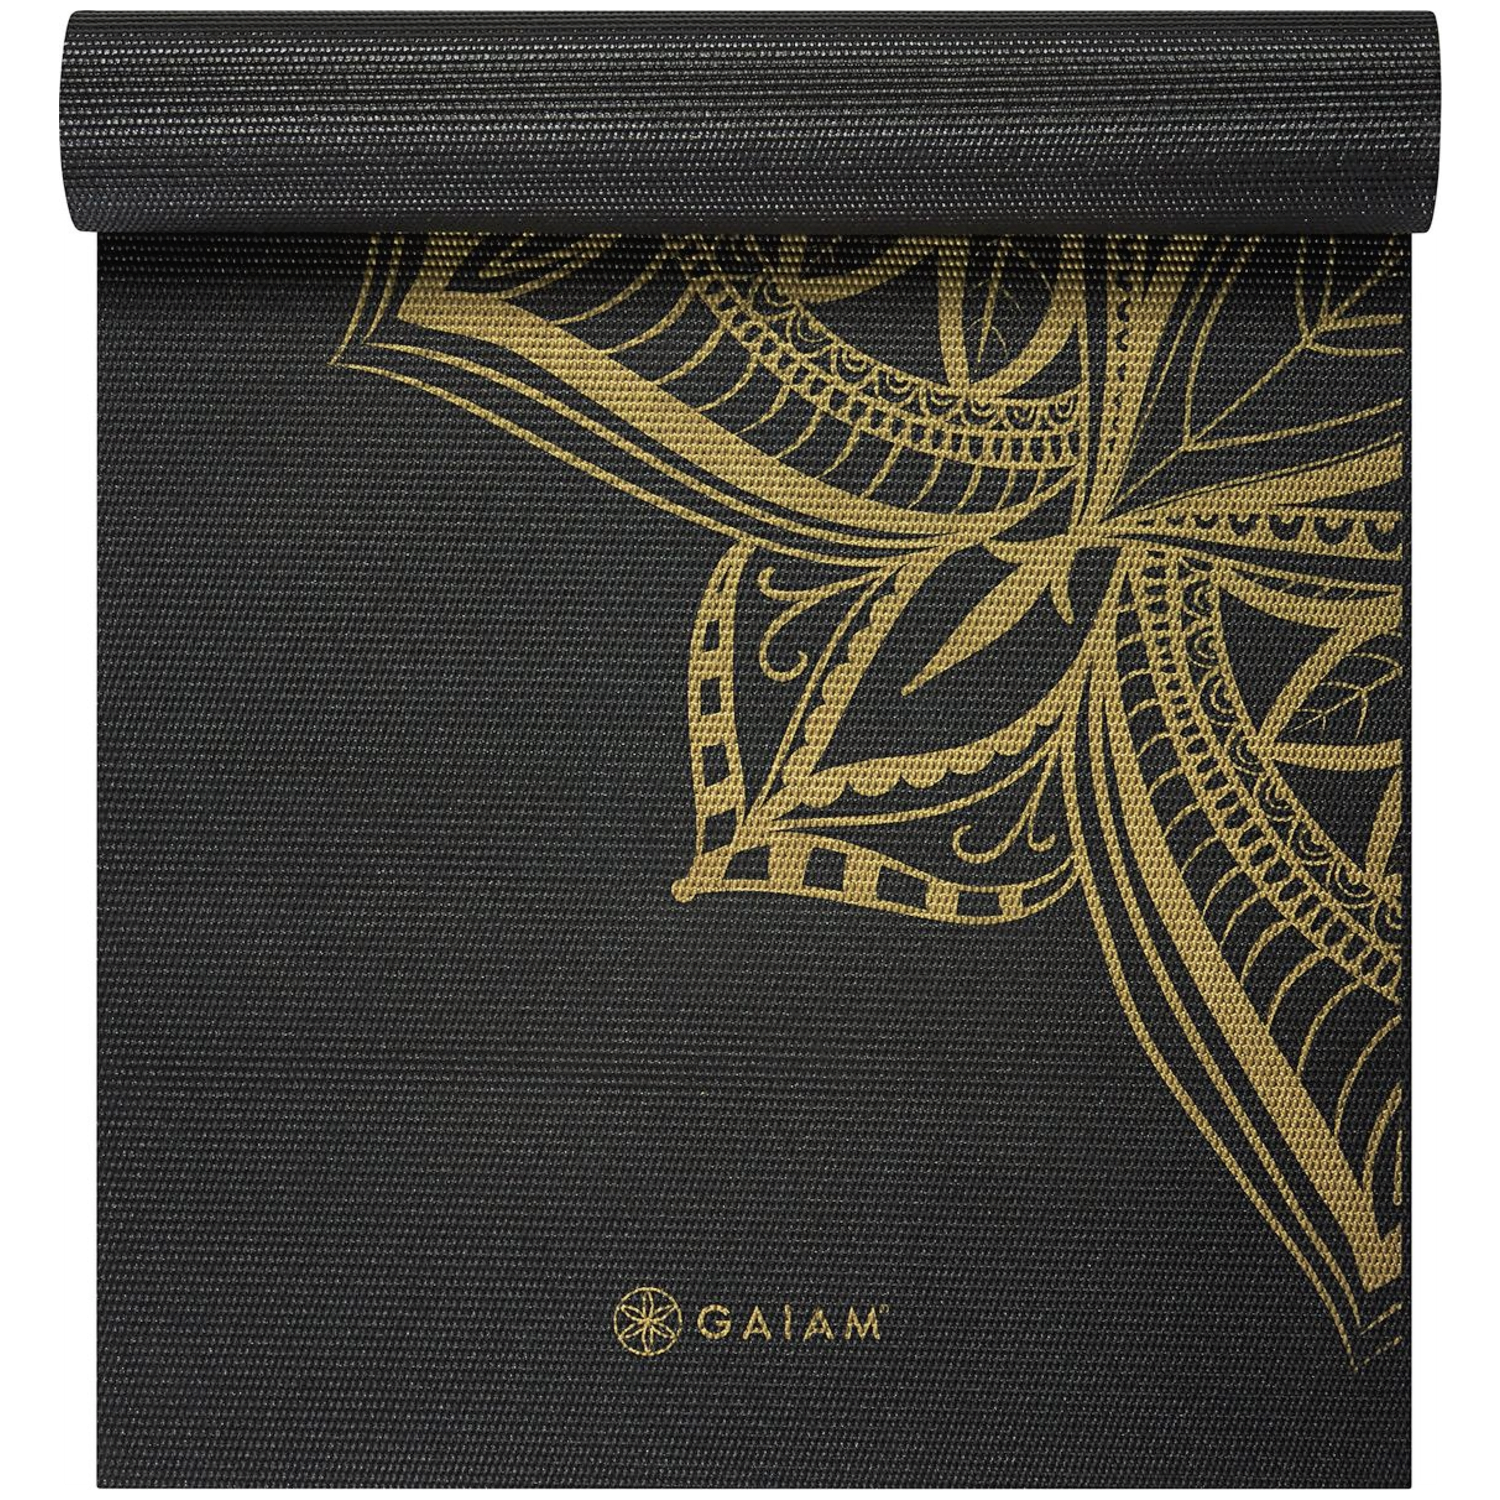 Gaiam Bronze Medallion Yoga 6mm Premium Yoga-Matten